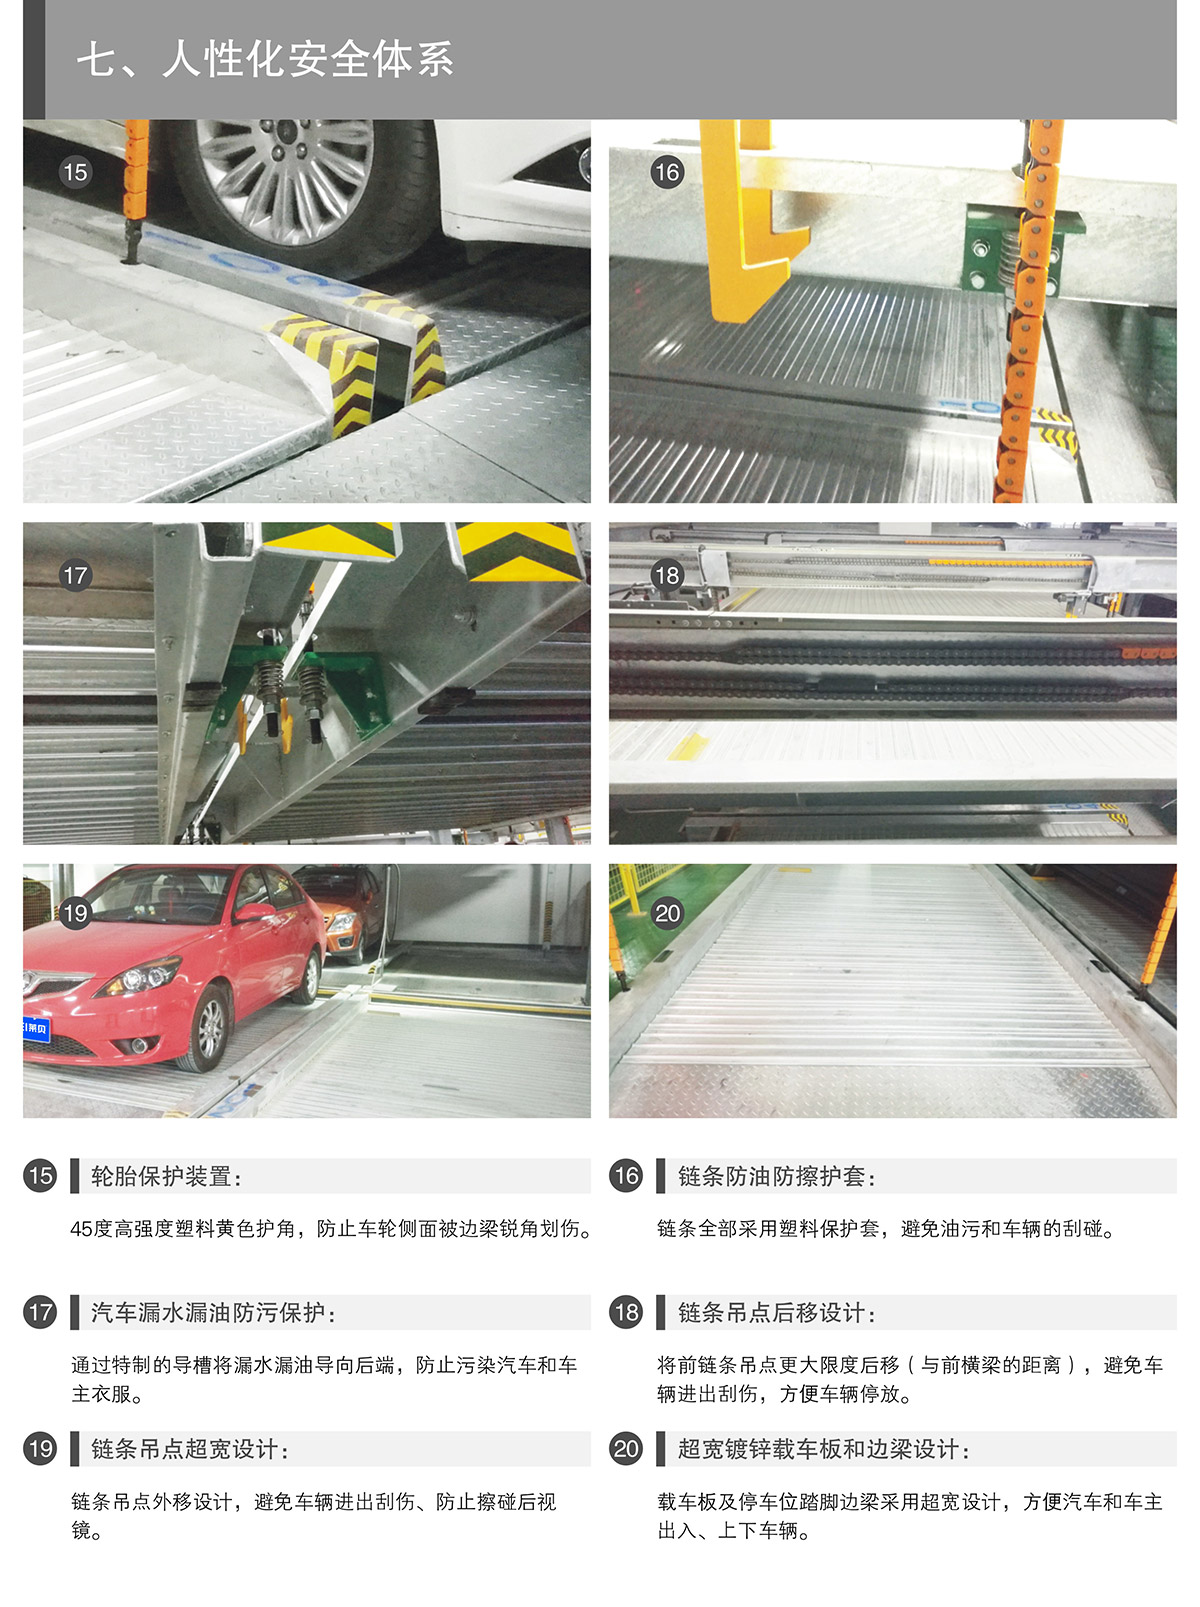 四川PSH2重列两层升降横移类机械式立体停车设备人性化安全体系.jpg